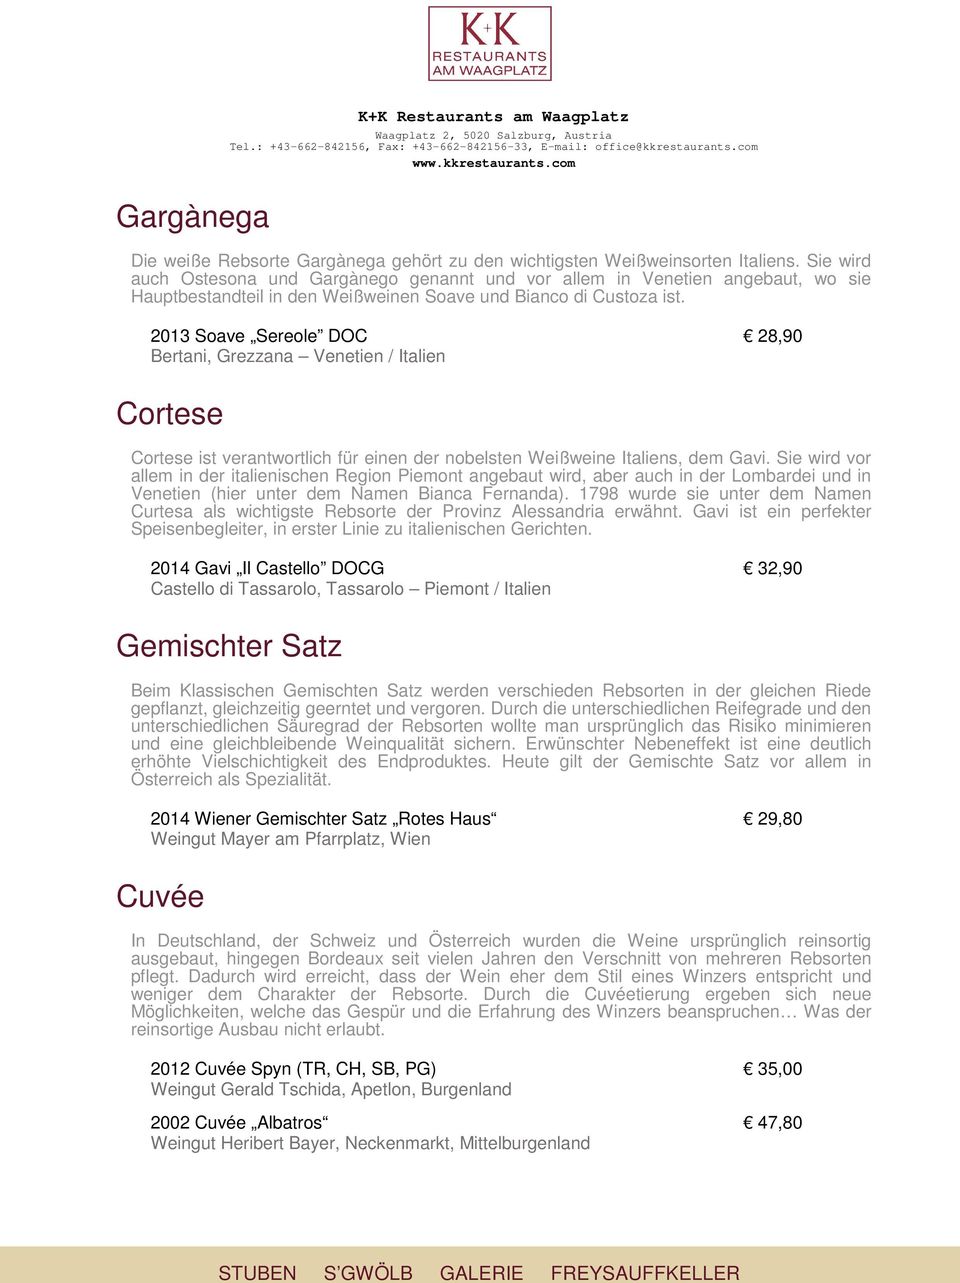 2013 Soave Sereole DOC 28,90 Bertani, Grezzana Venetien / Italien Cortese Cortese ist verantwortlich für einen der nobelsten Weißweine Italiens, dem Gavi.